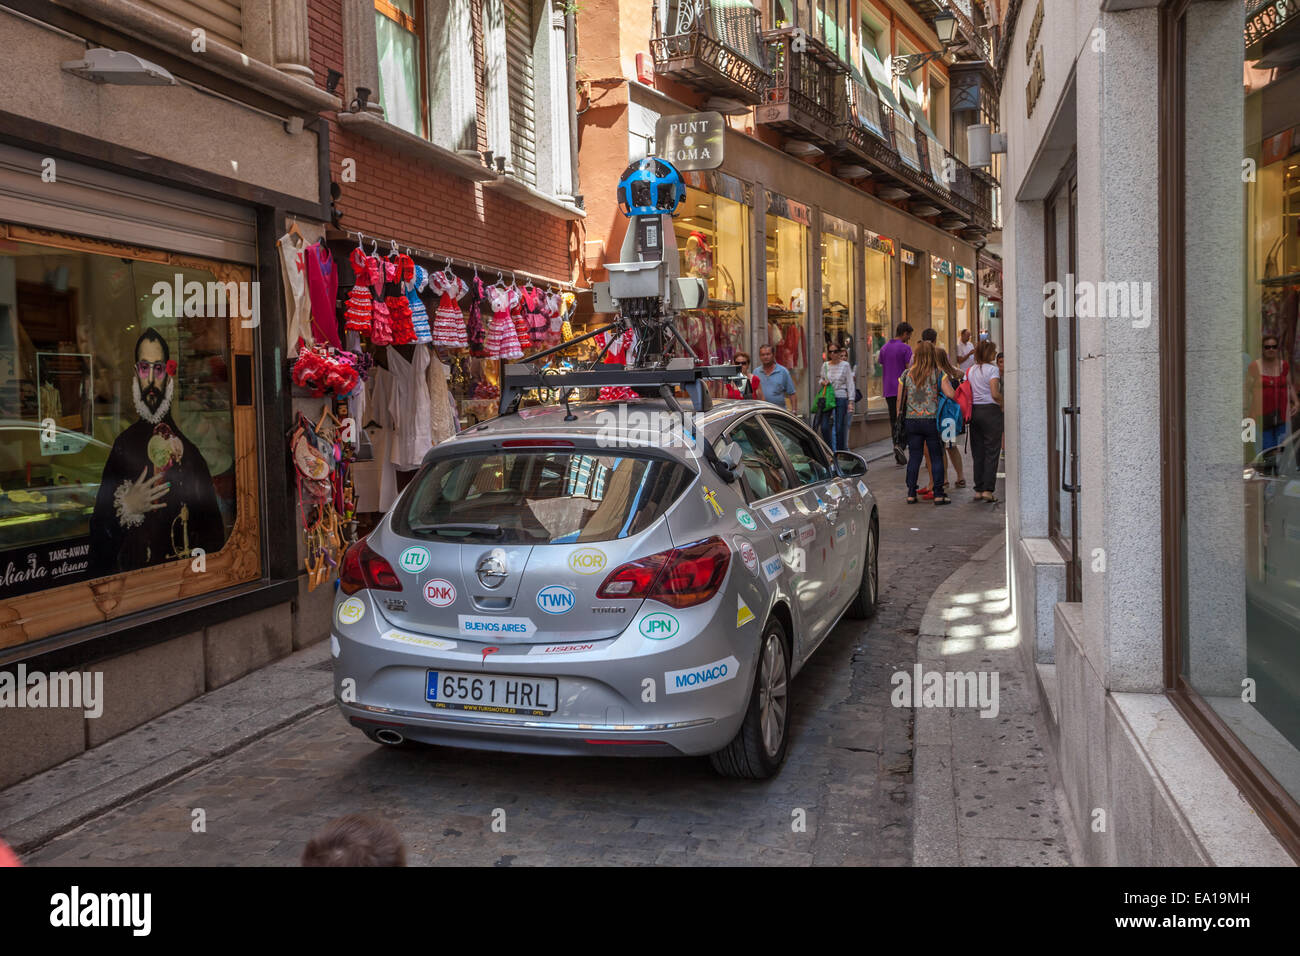 Google Street View location dans la vieille ville de Tolède, Espagne Banque D'Images